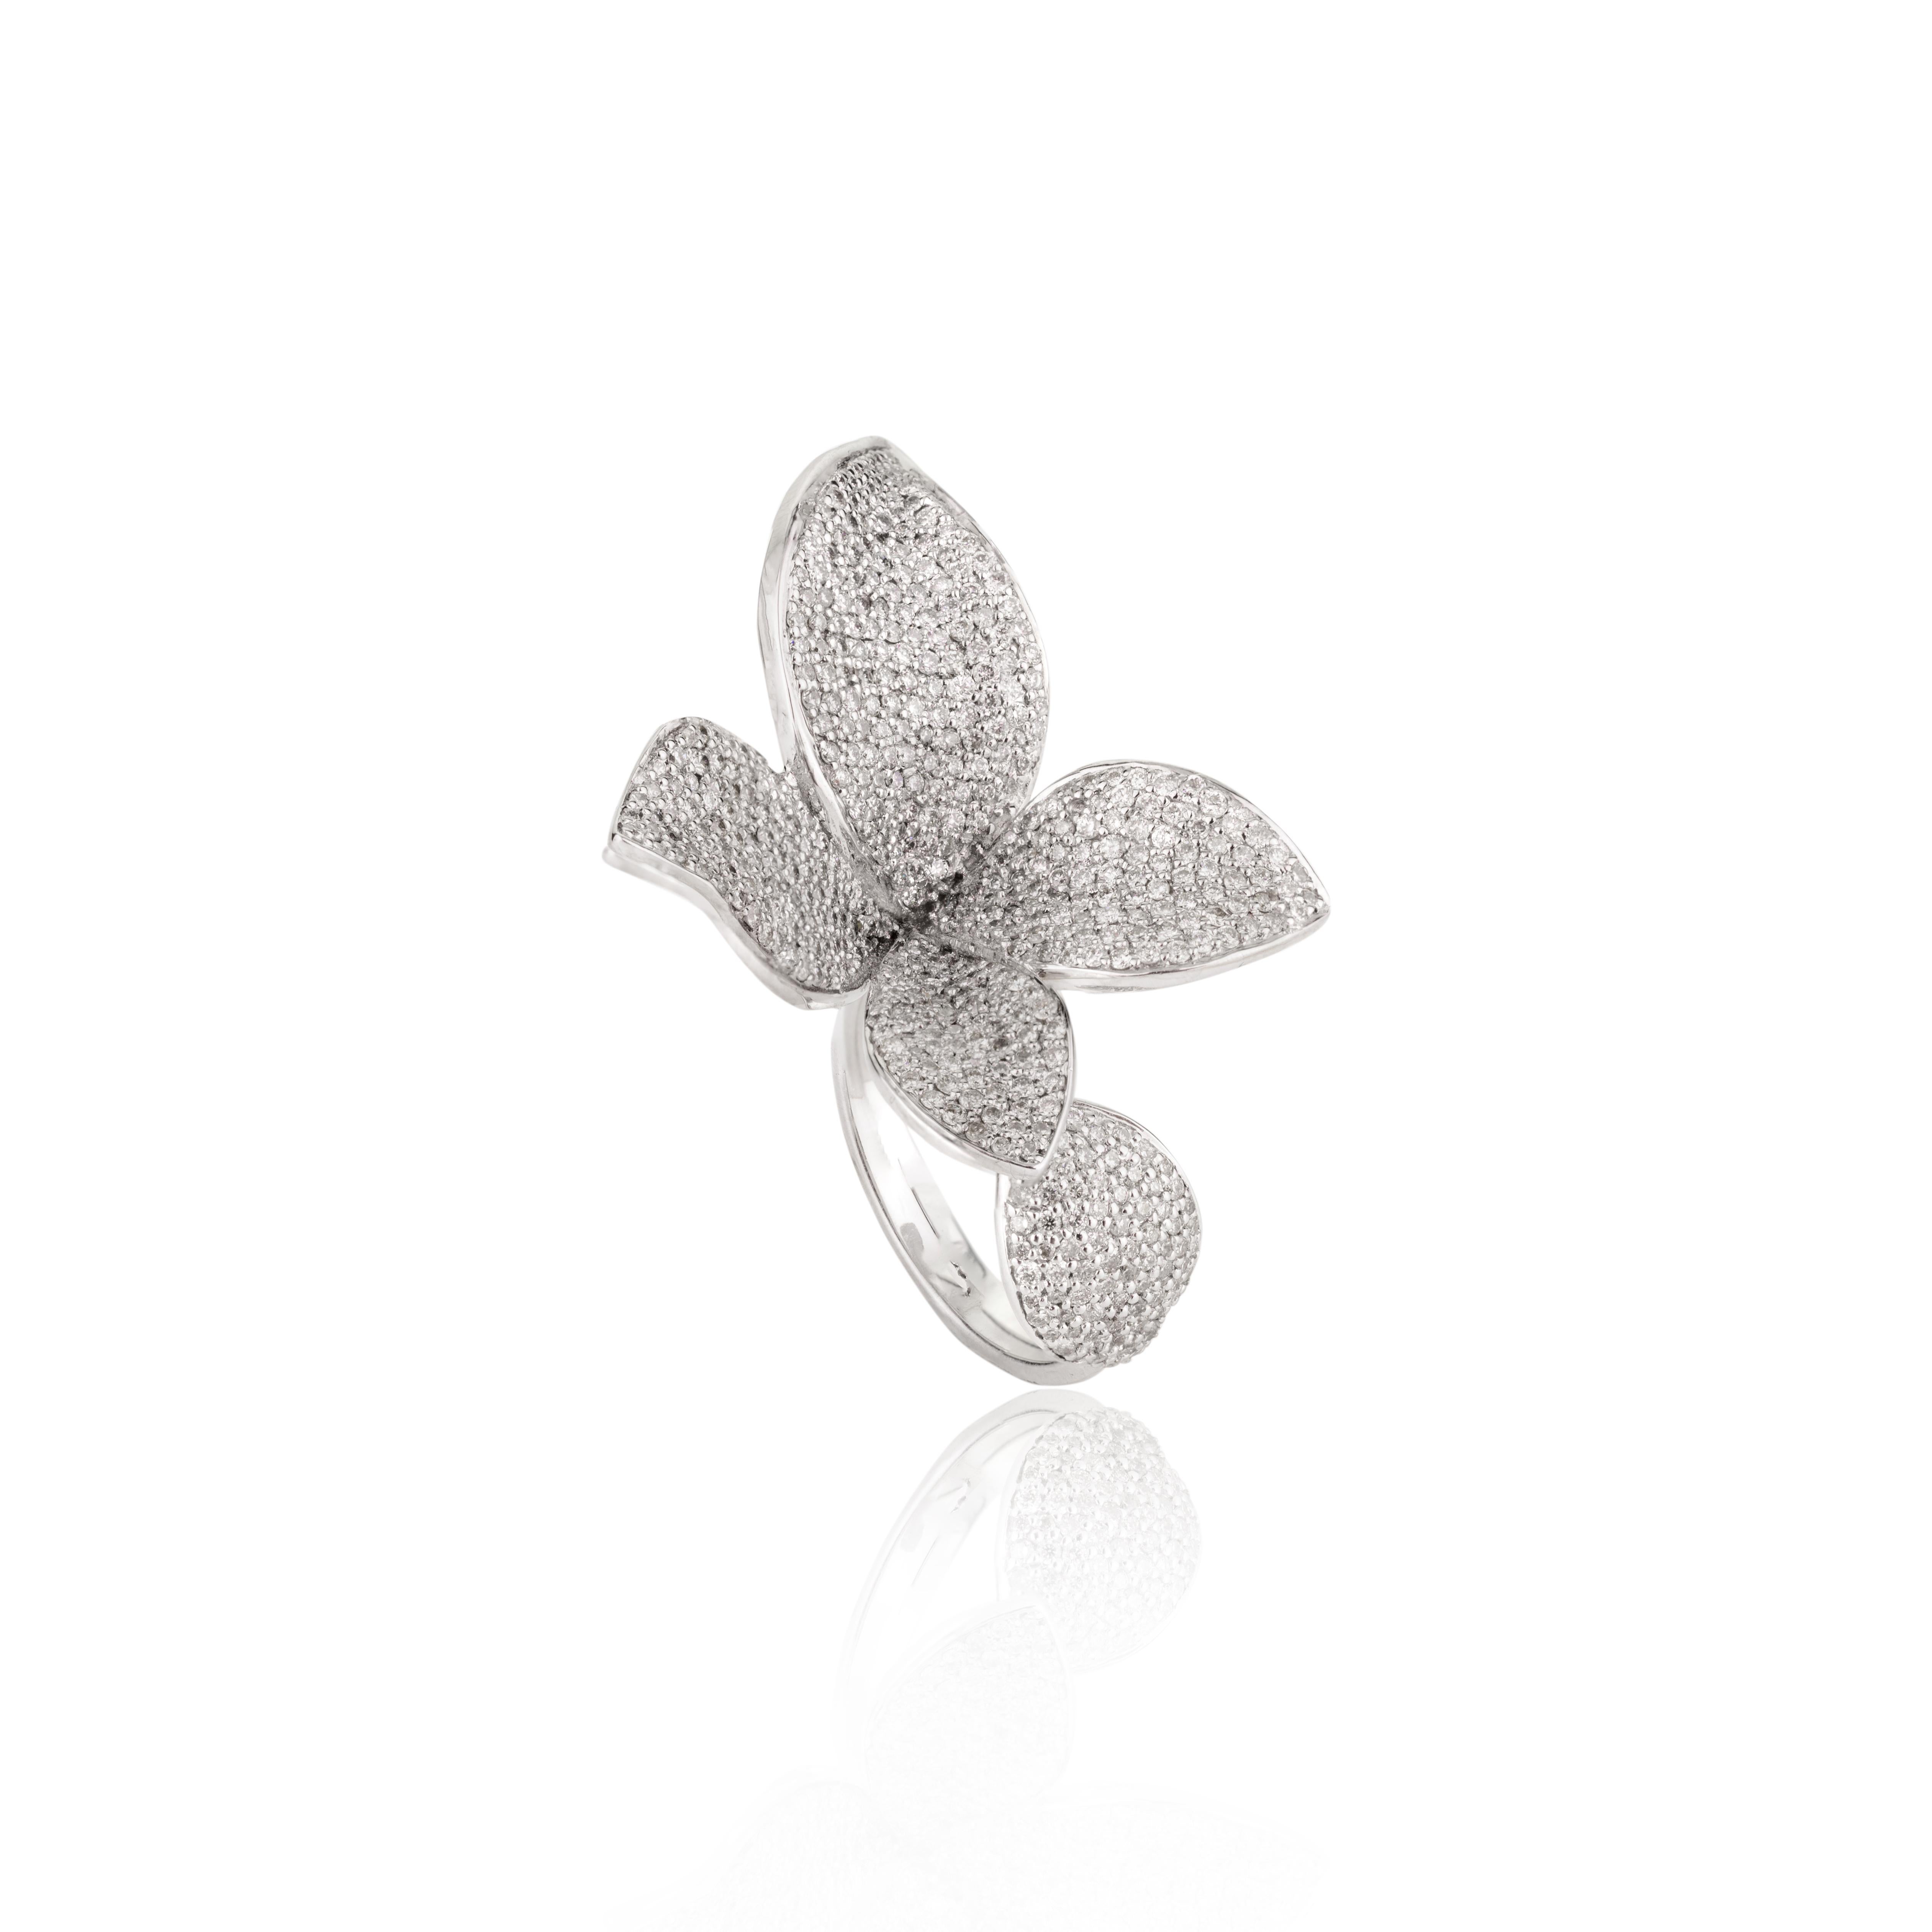 For Sale:  Designer 2 Carat Diamond Flower Cocktail Ring in 18k White Gold for Women 7